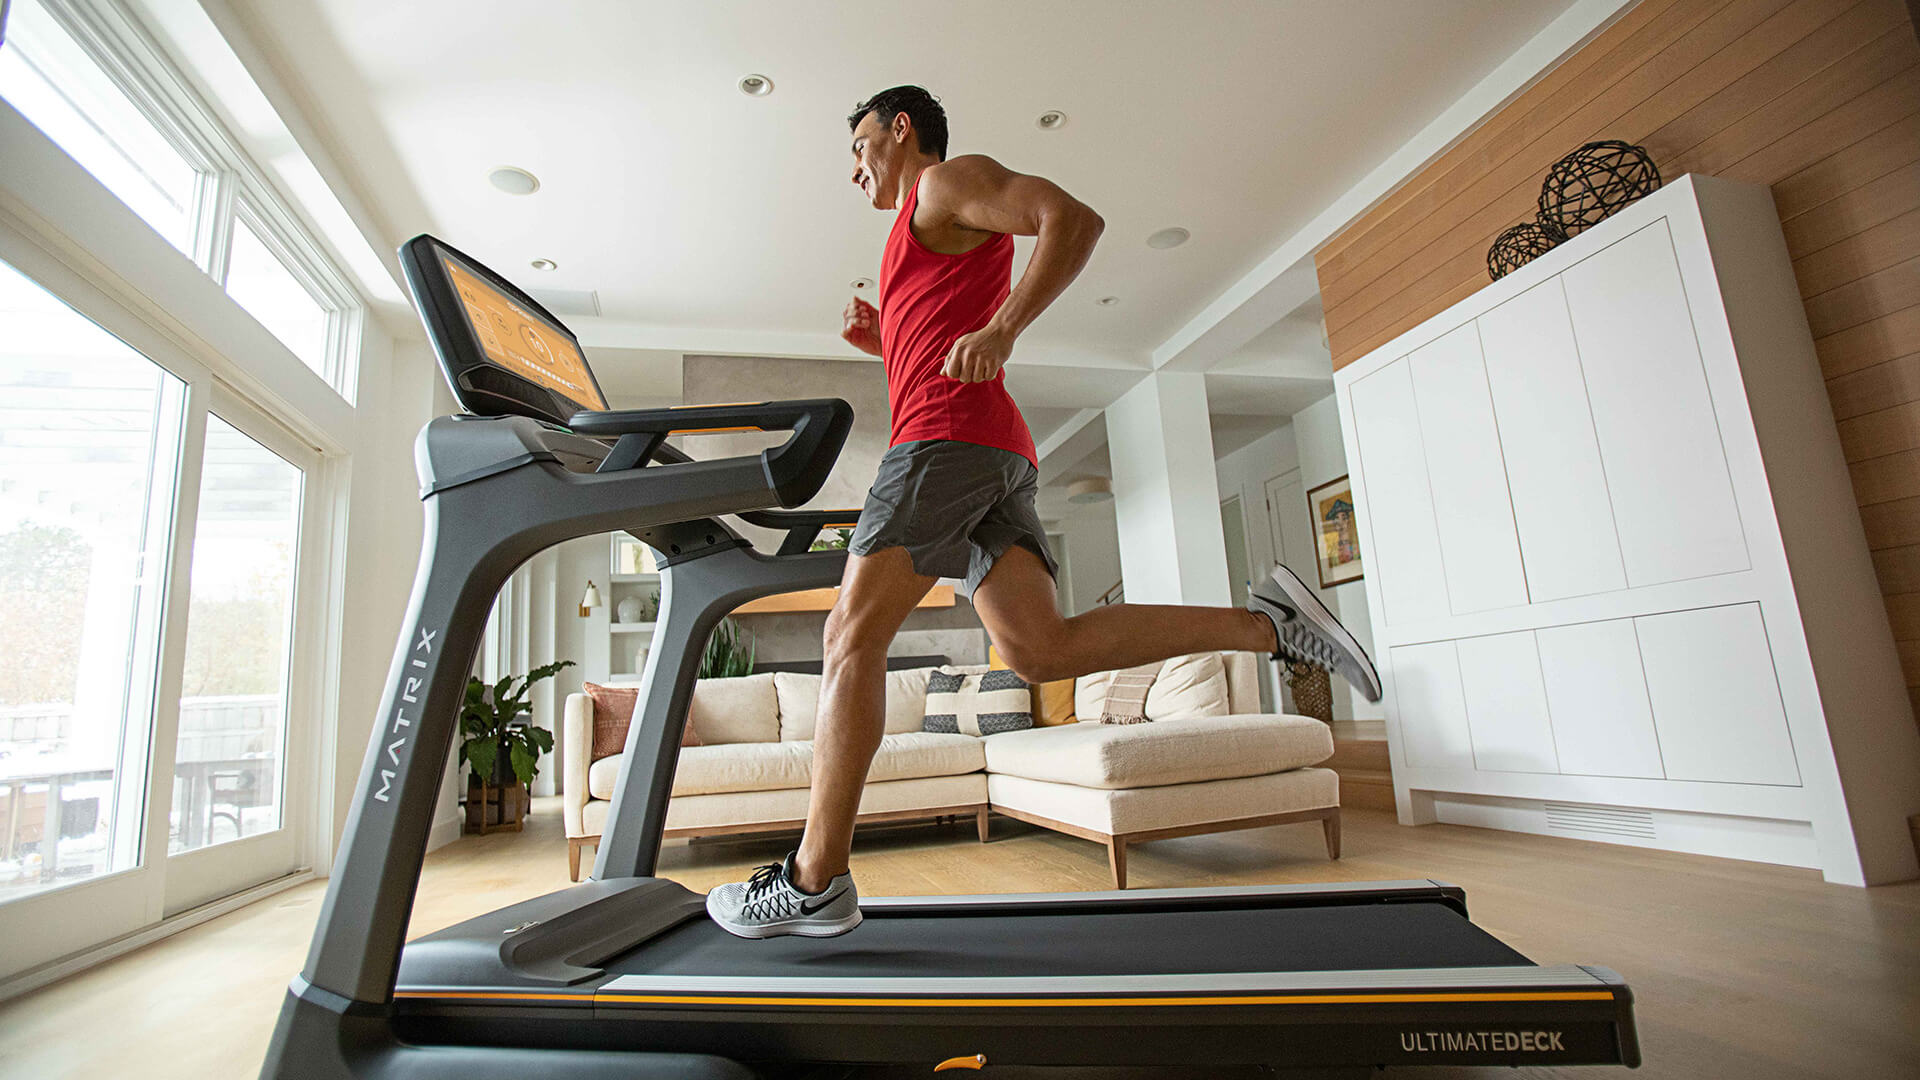 Man running on a residential Matrix treadmill in living room